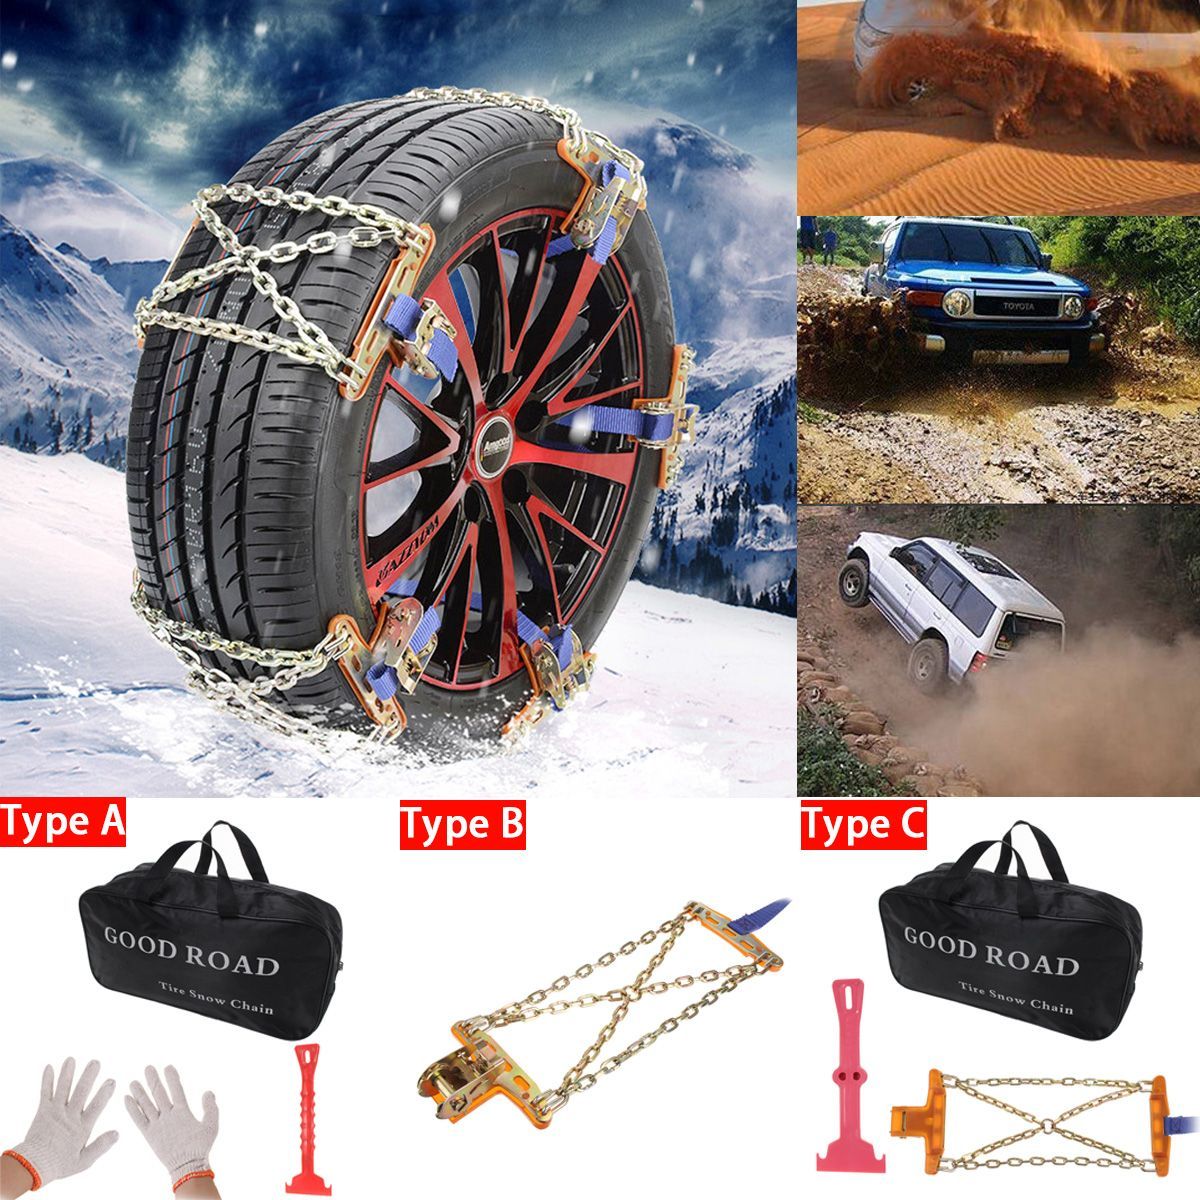 Steel-Winter-Car-Snow-Chain-Storage-Bag-Truck-Wheel-Tire-Anti-skid-Safety-Belt-X-Crain-Structure-Saf-1602570